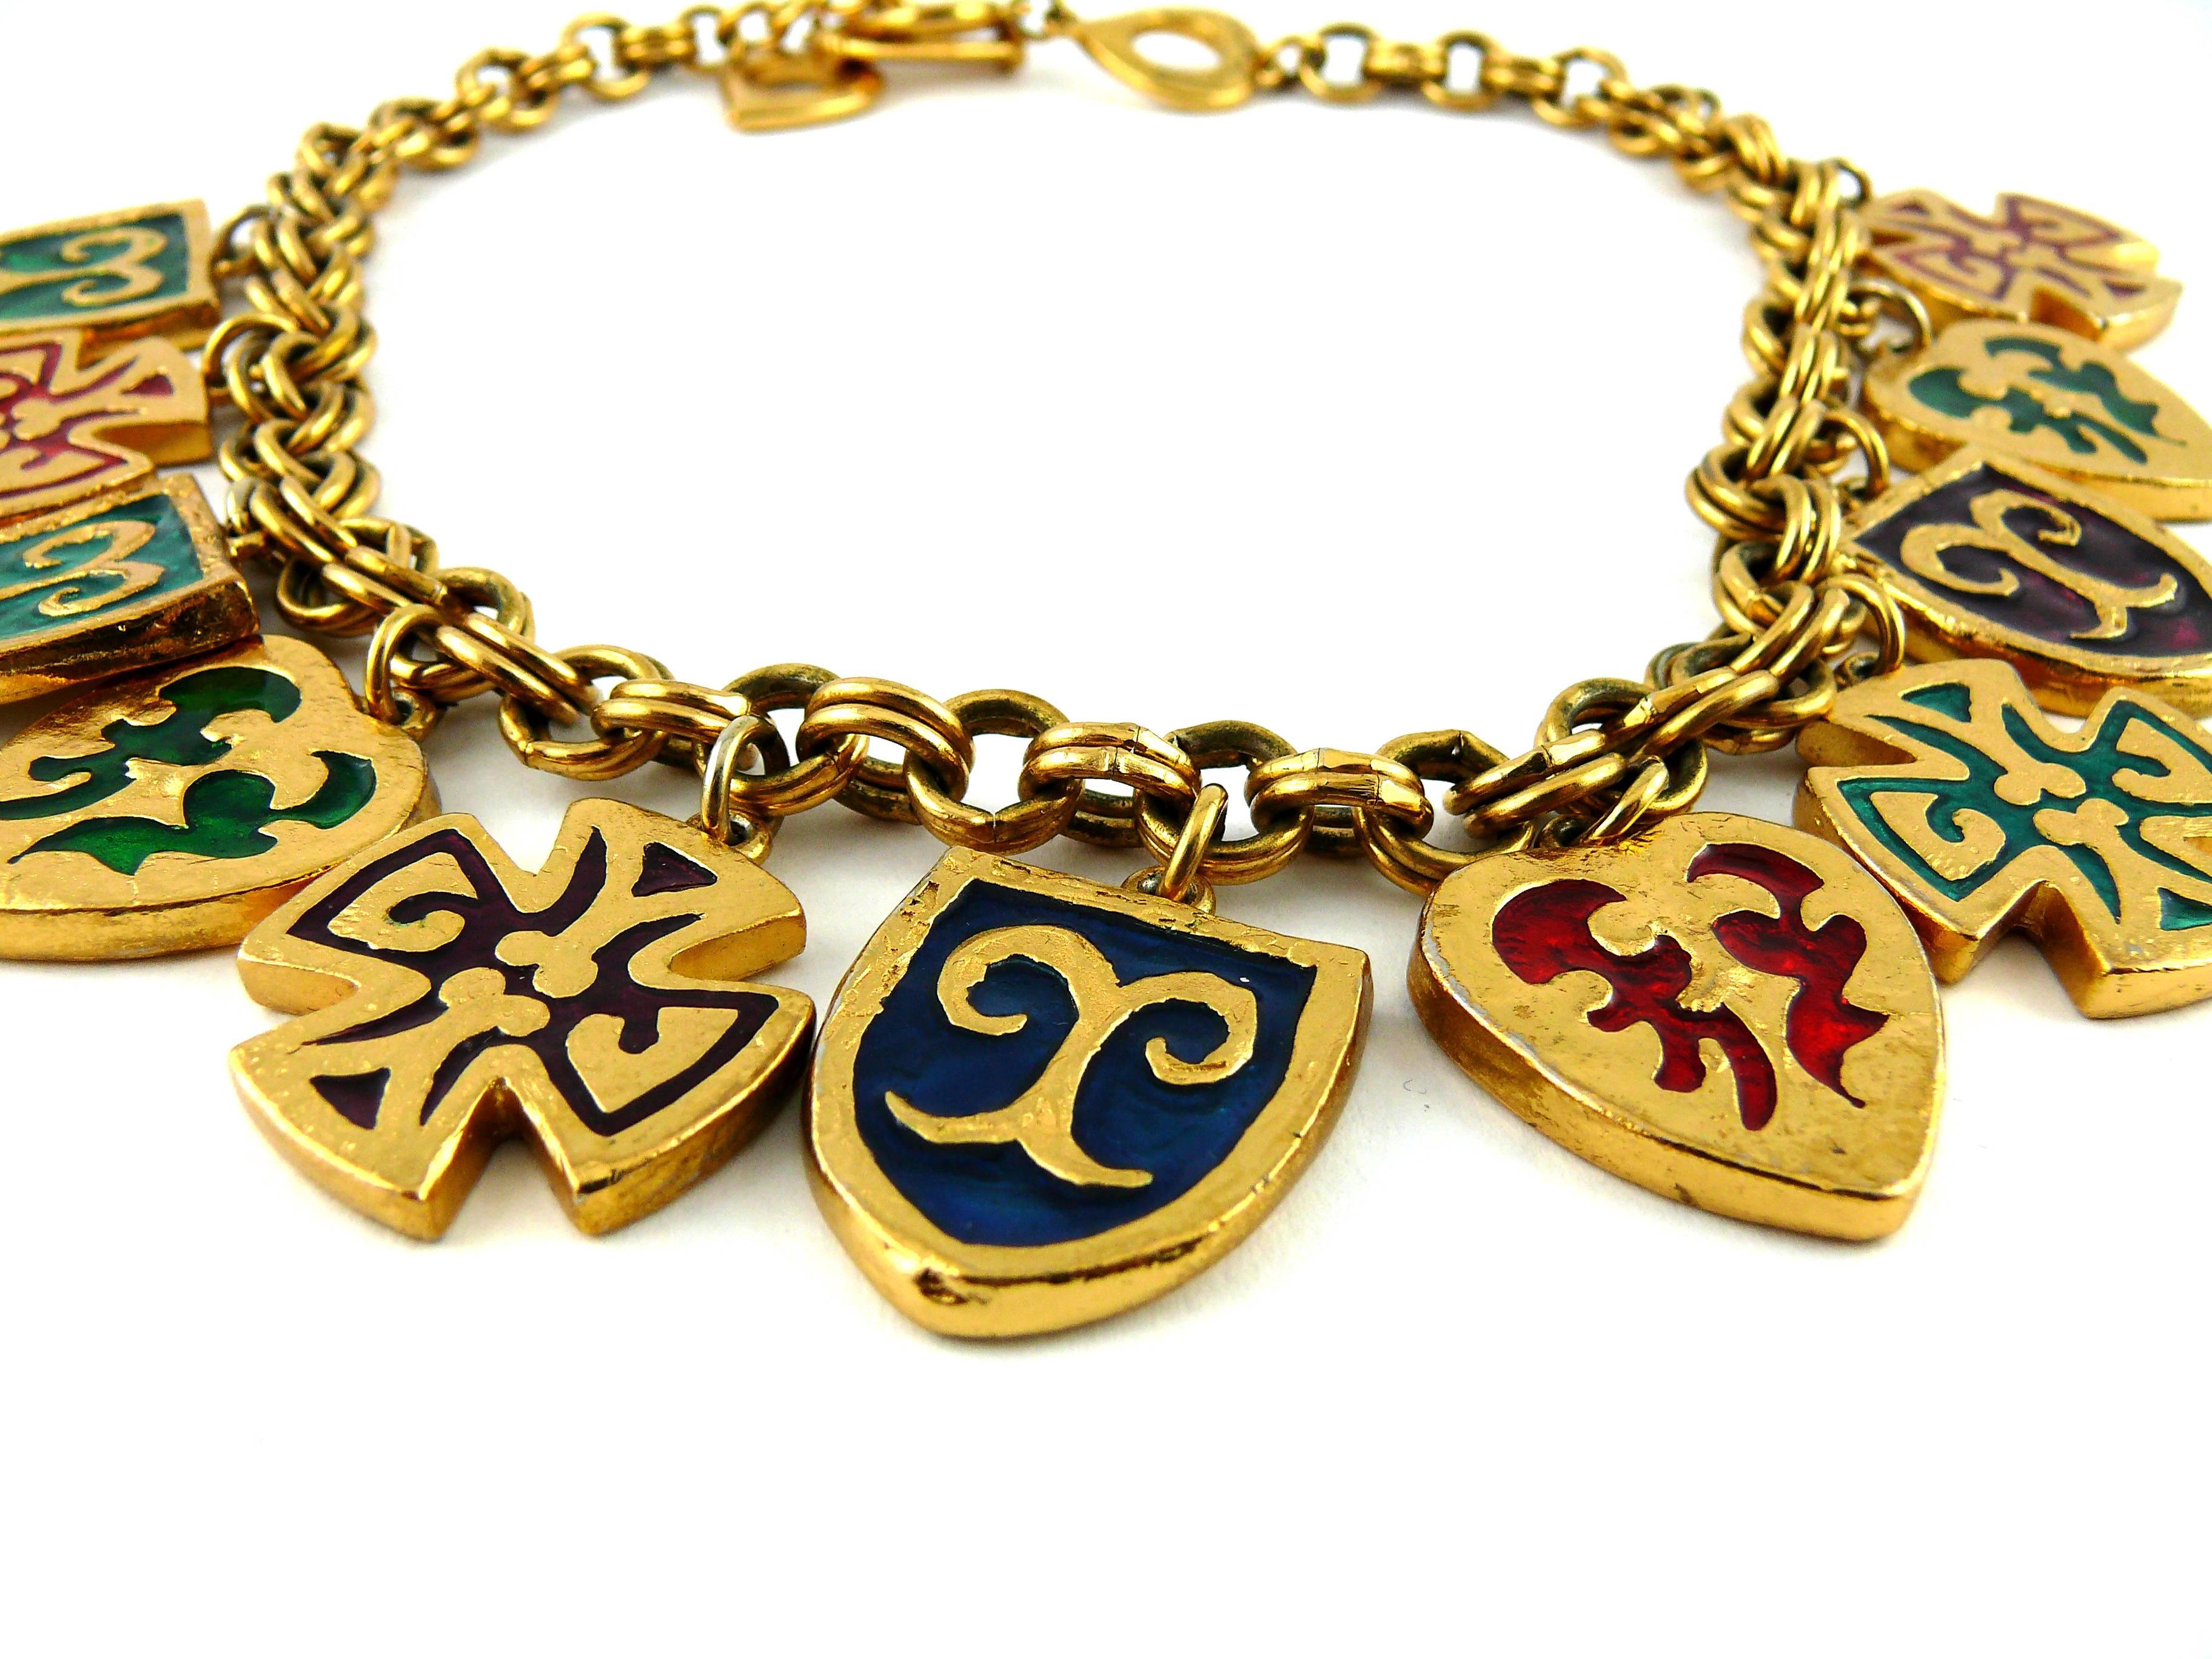 Women's Yves Saint Laurent YSL Vintage Rare Enamel Charm Necklace